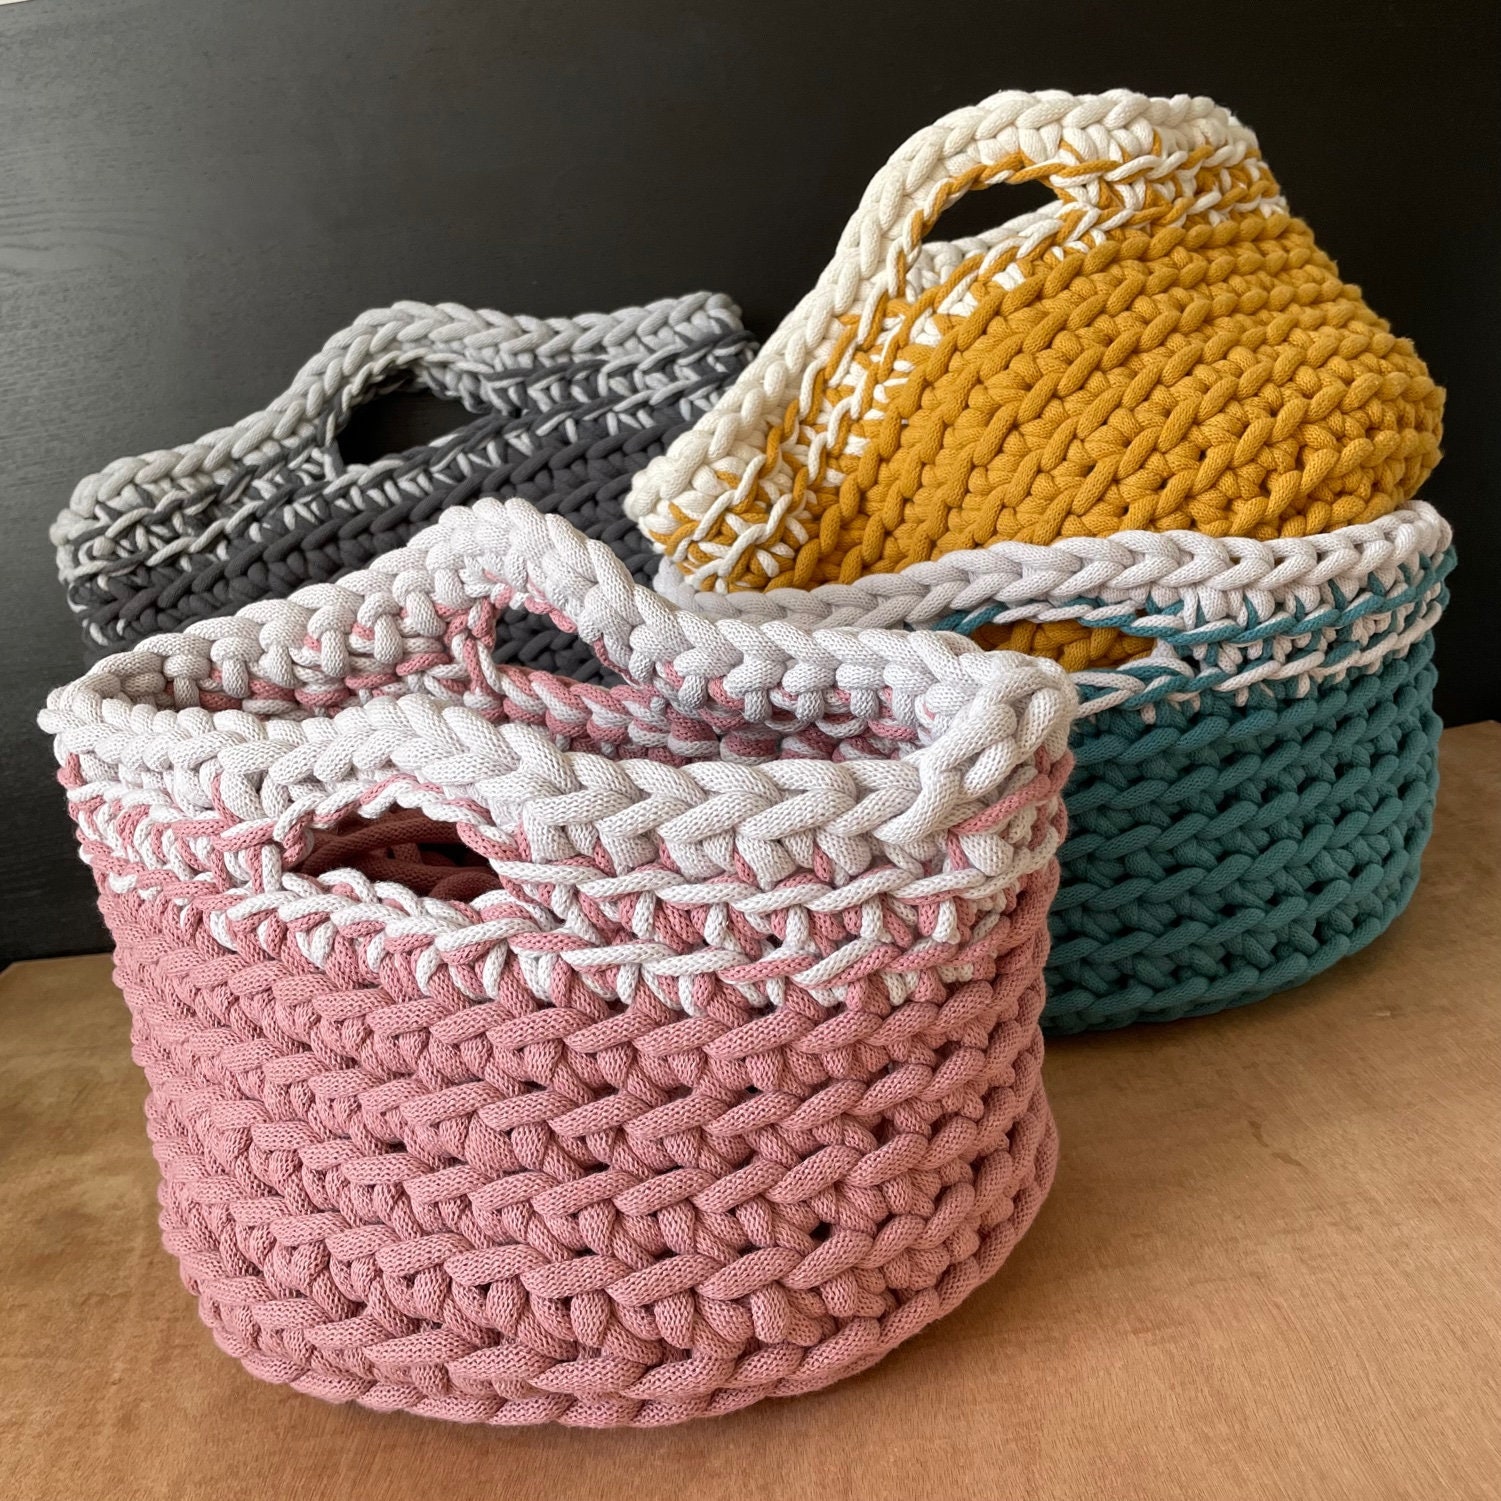 Hannah Blanket Crochet Kit. Stripy Throw Crochet Kit. Beginners